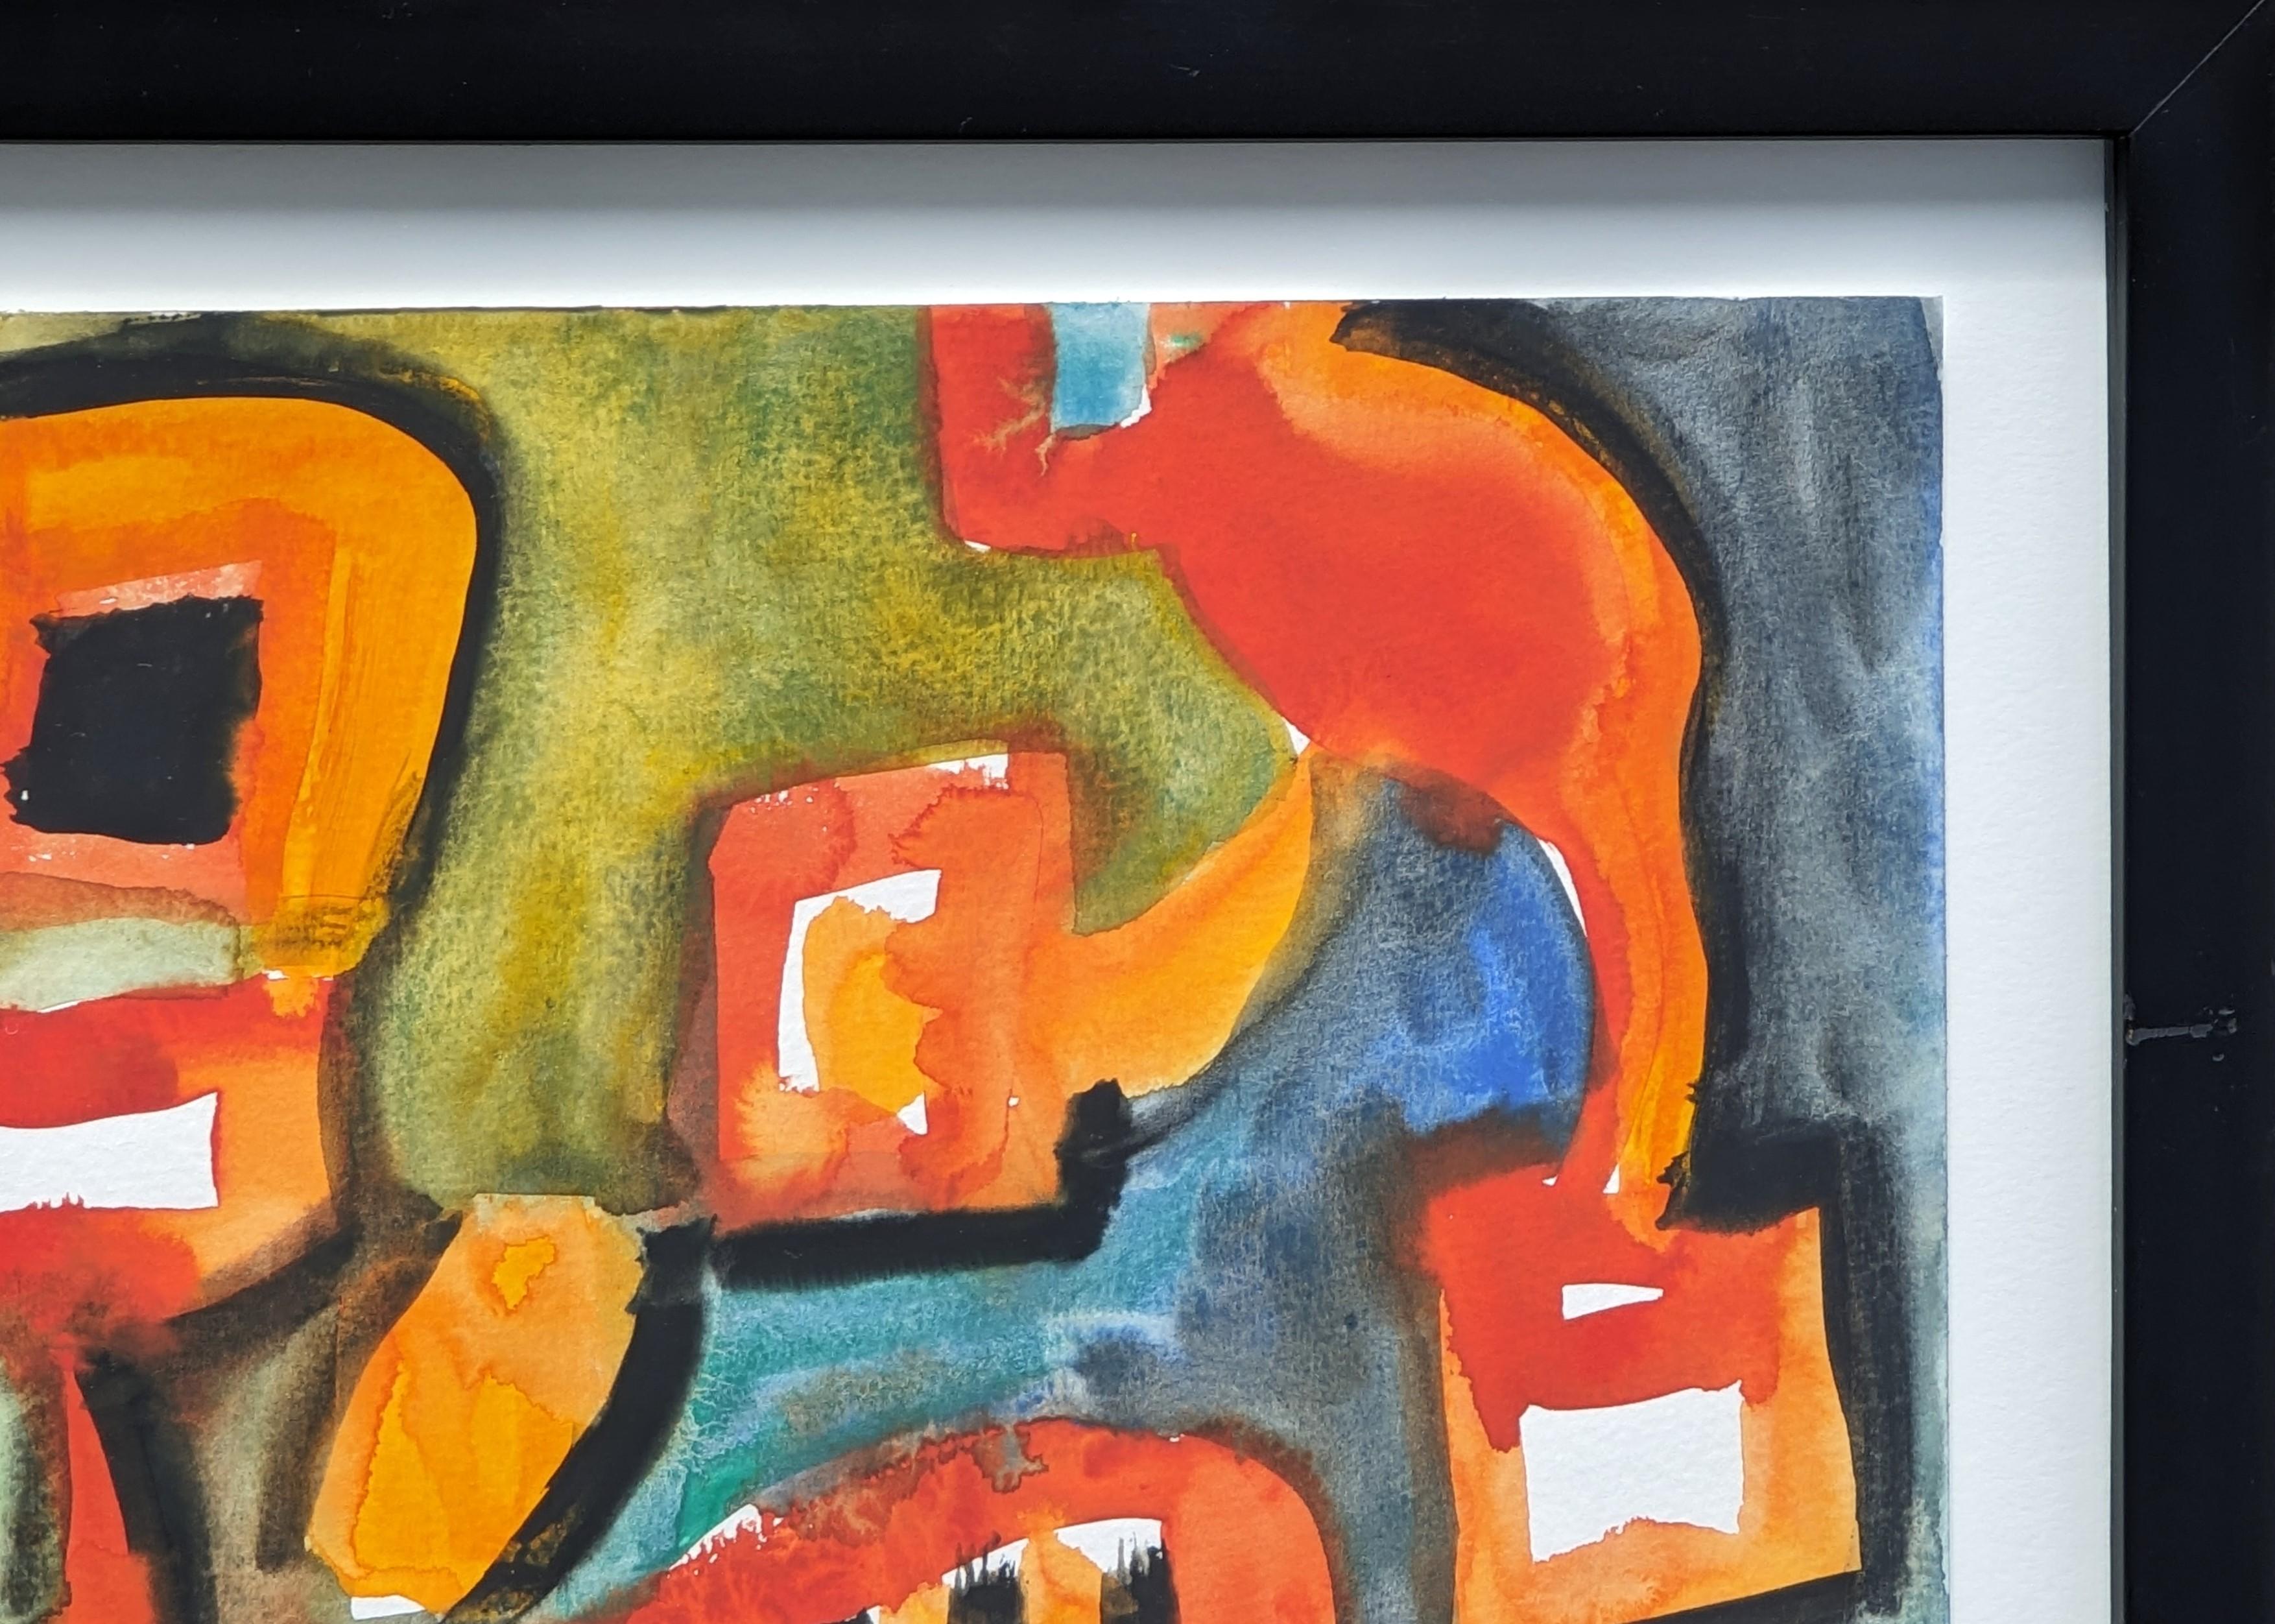 Modernes abstraktes Aquarell in Orange und Gelbtönen von Dick Wray aus Houston. Das Werk zeigt geschwungene organische Formen in warmen Farbtönen vor einem grün und blau getönten Hintergrund. Signiert und datiert am unteren Rand der Vorderseite.